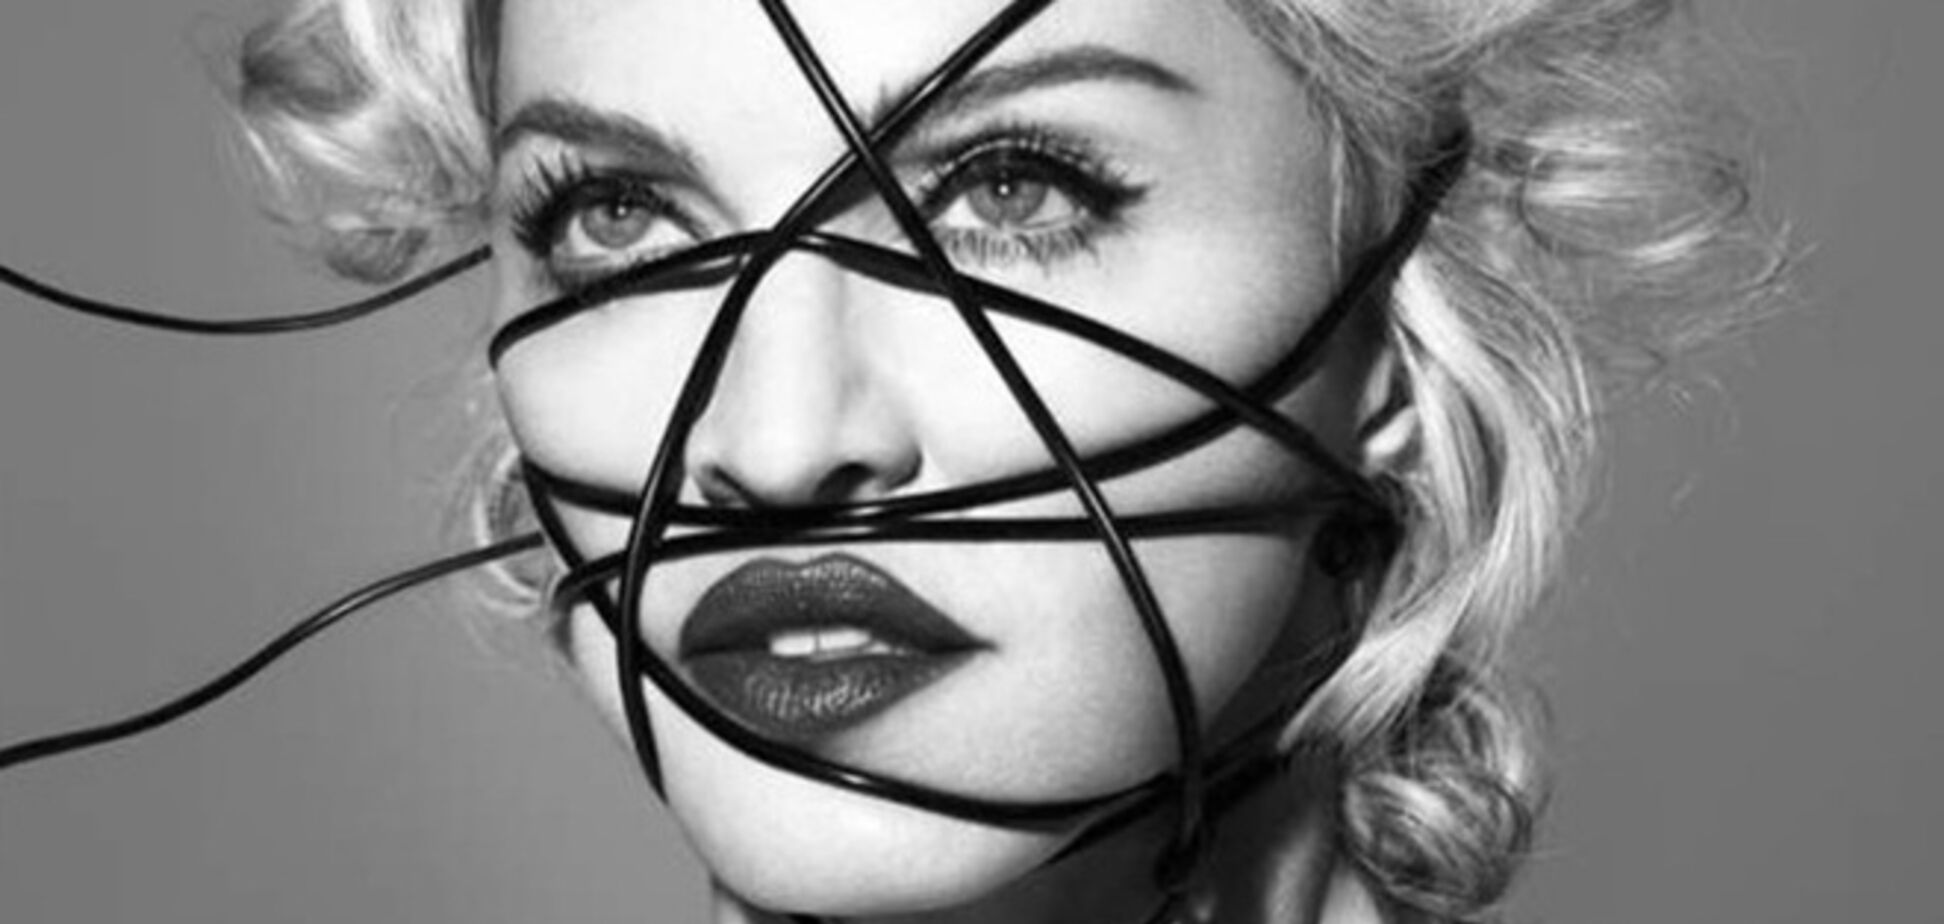 Мадонна пиарит свой новый альбом за счет трагедии в Париже